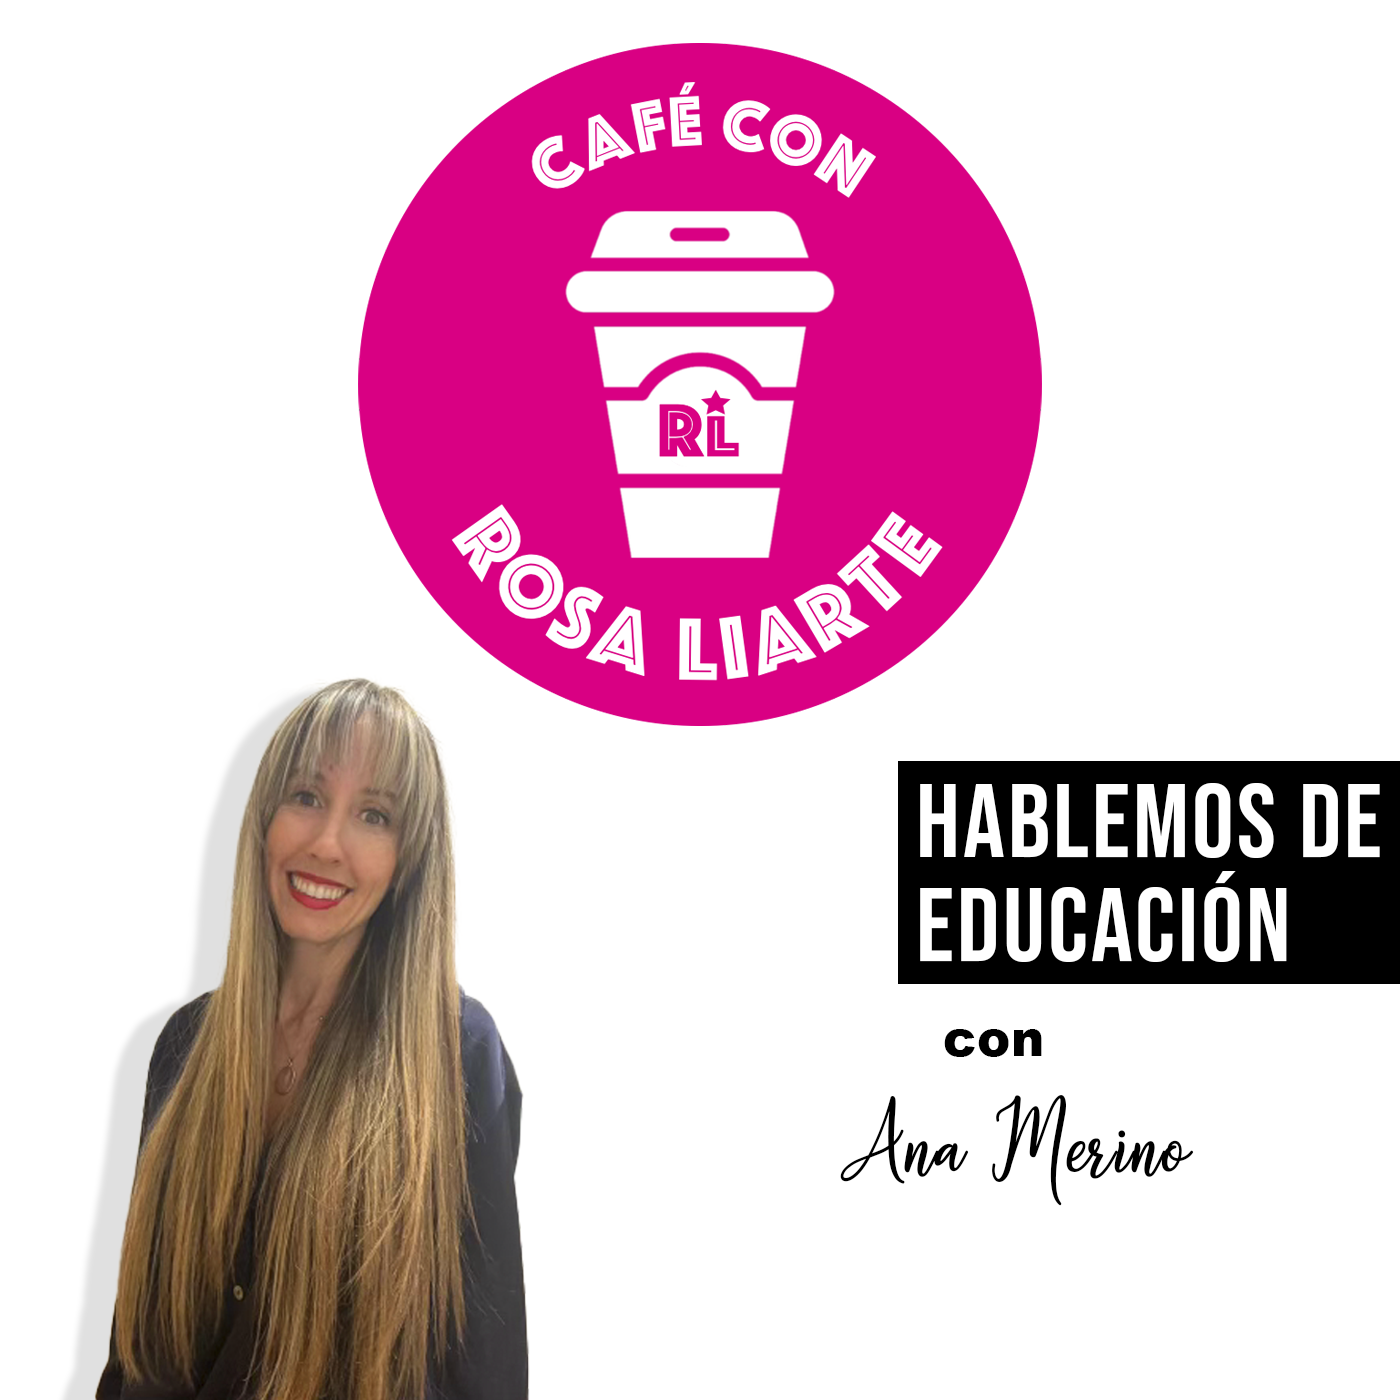 Ana Merino – «No hay educación sin coeducación»